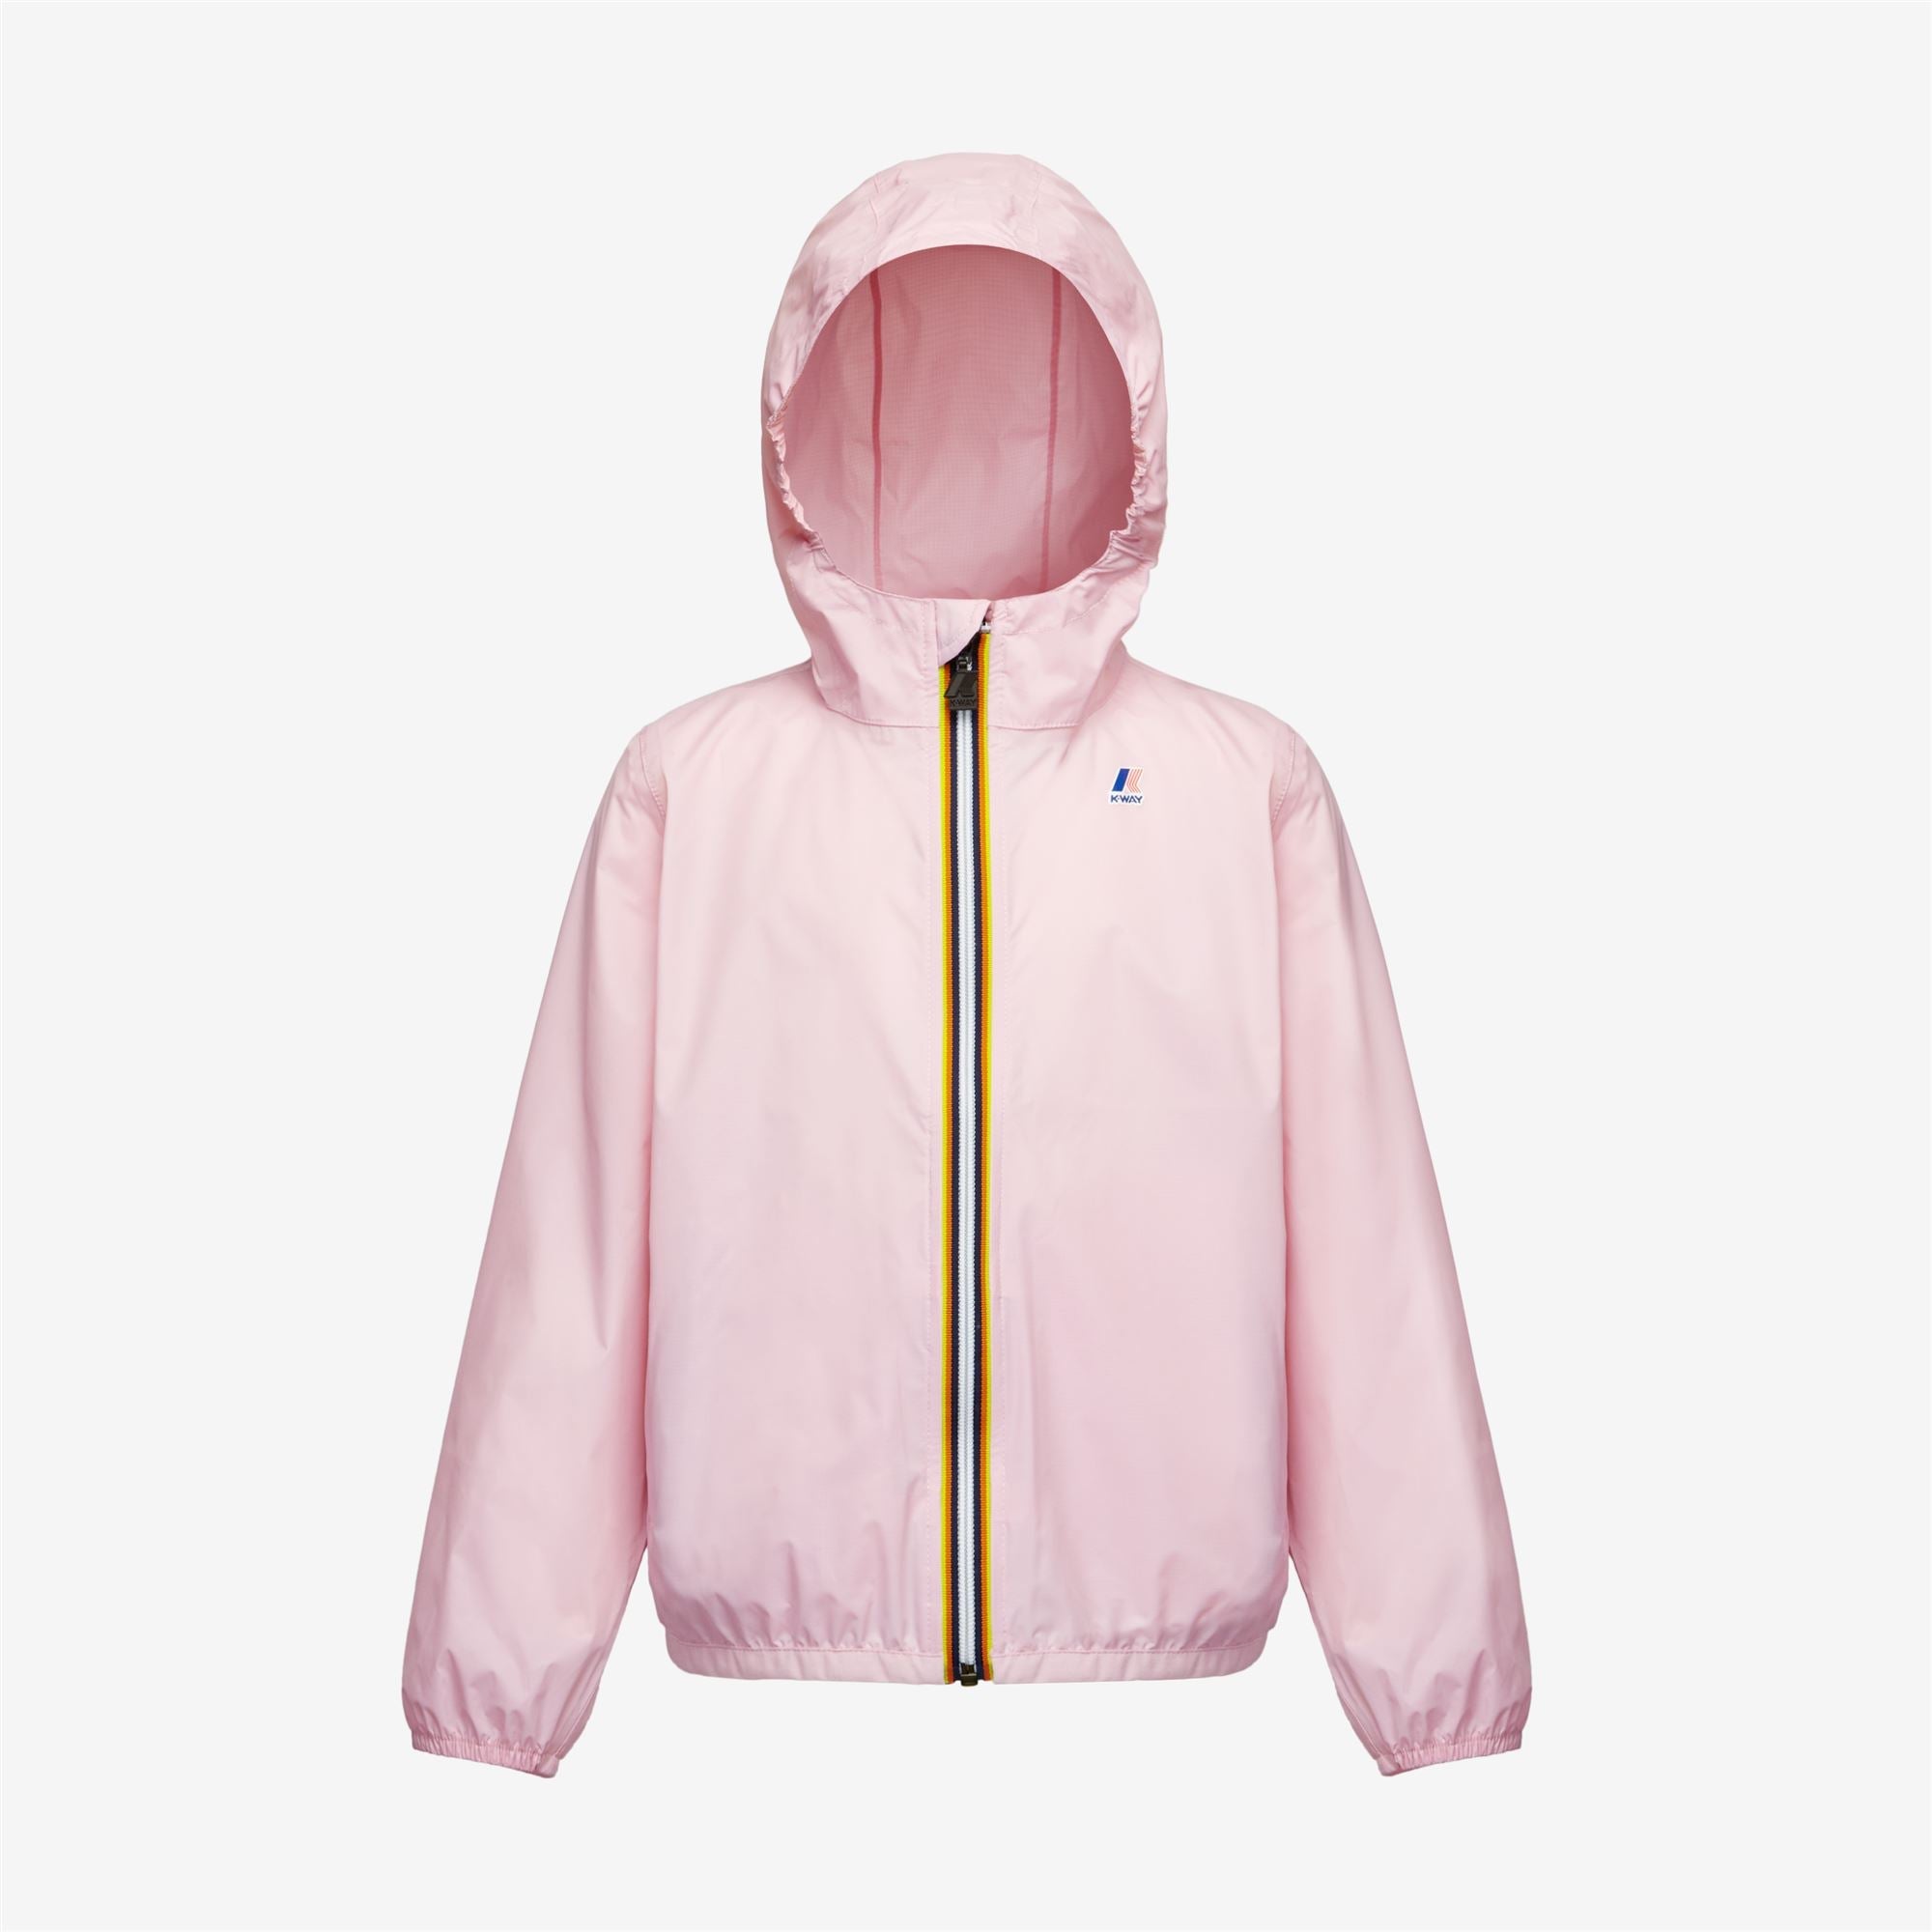 Claude - Kids Packable Full Zip Rain Jacket in Pink